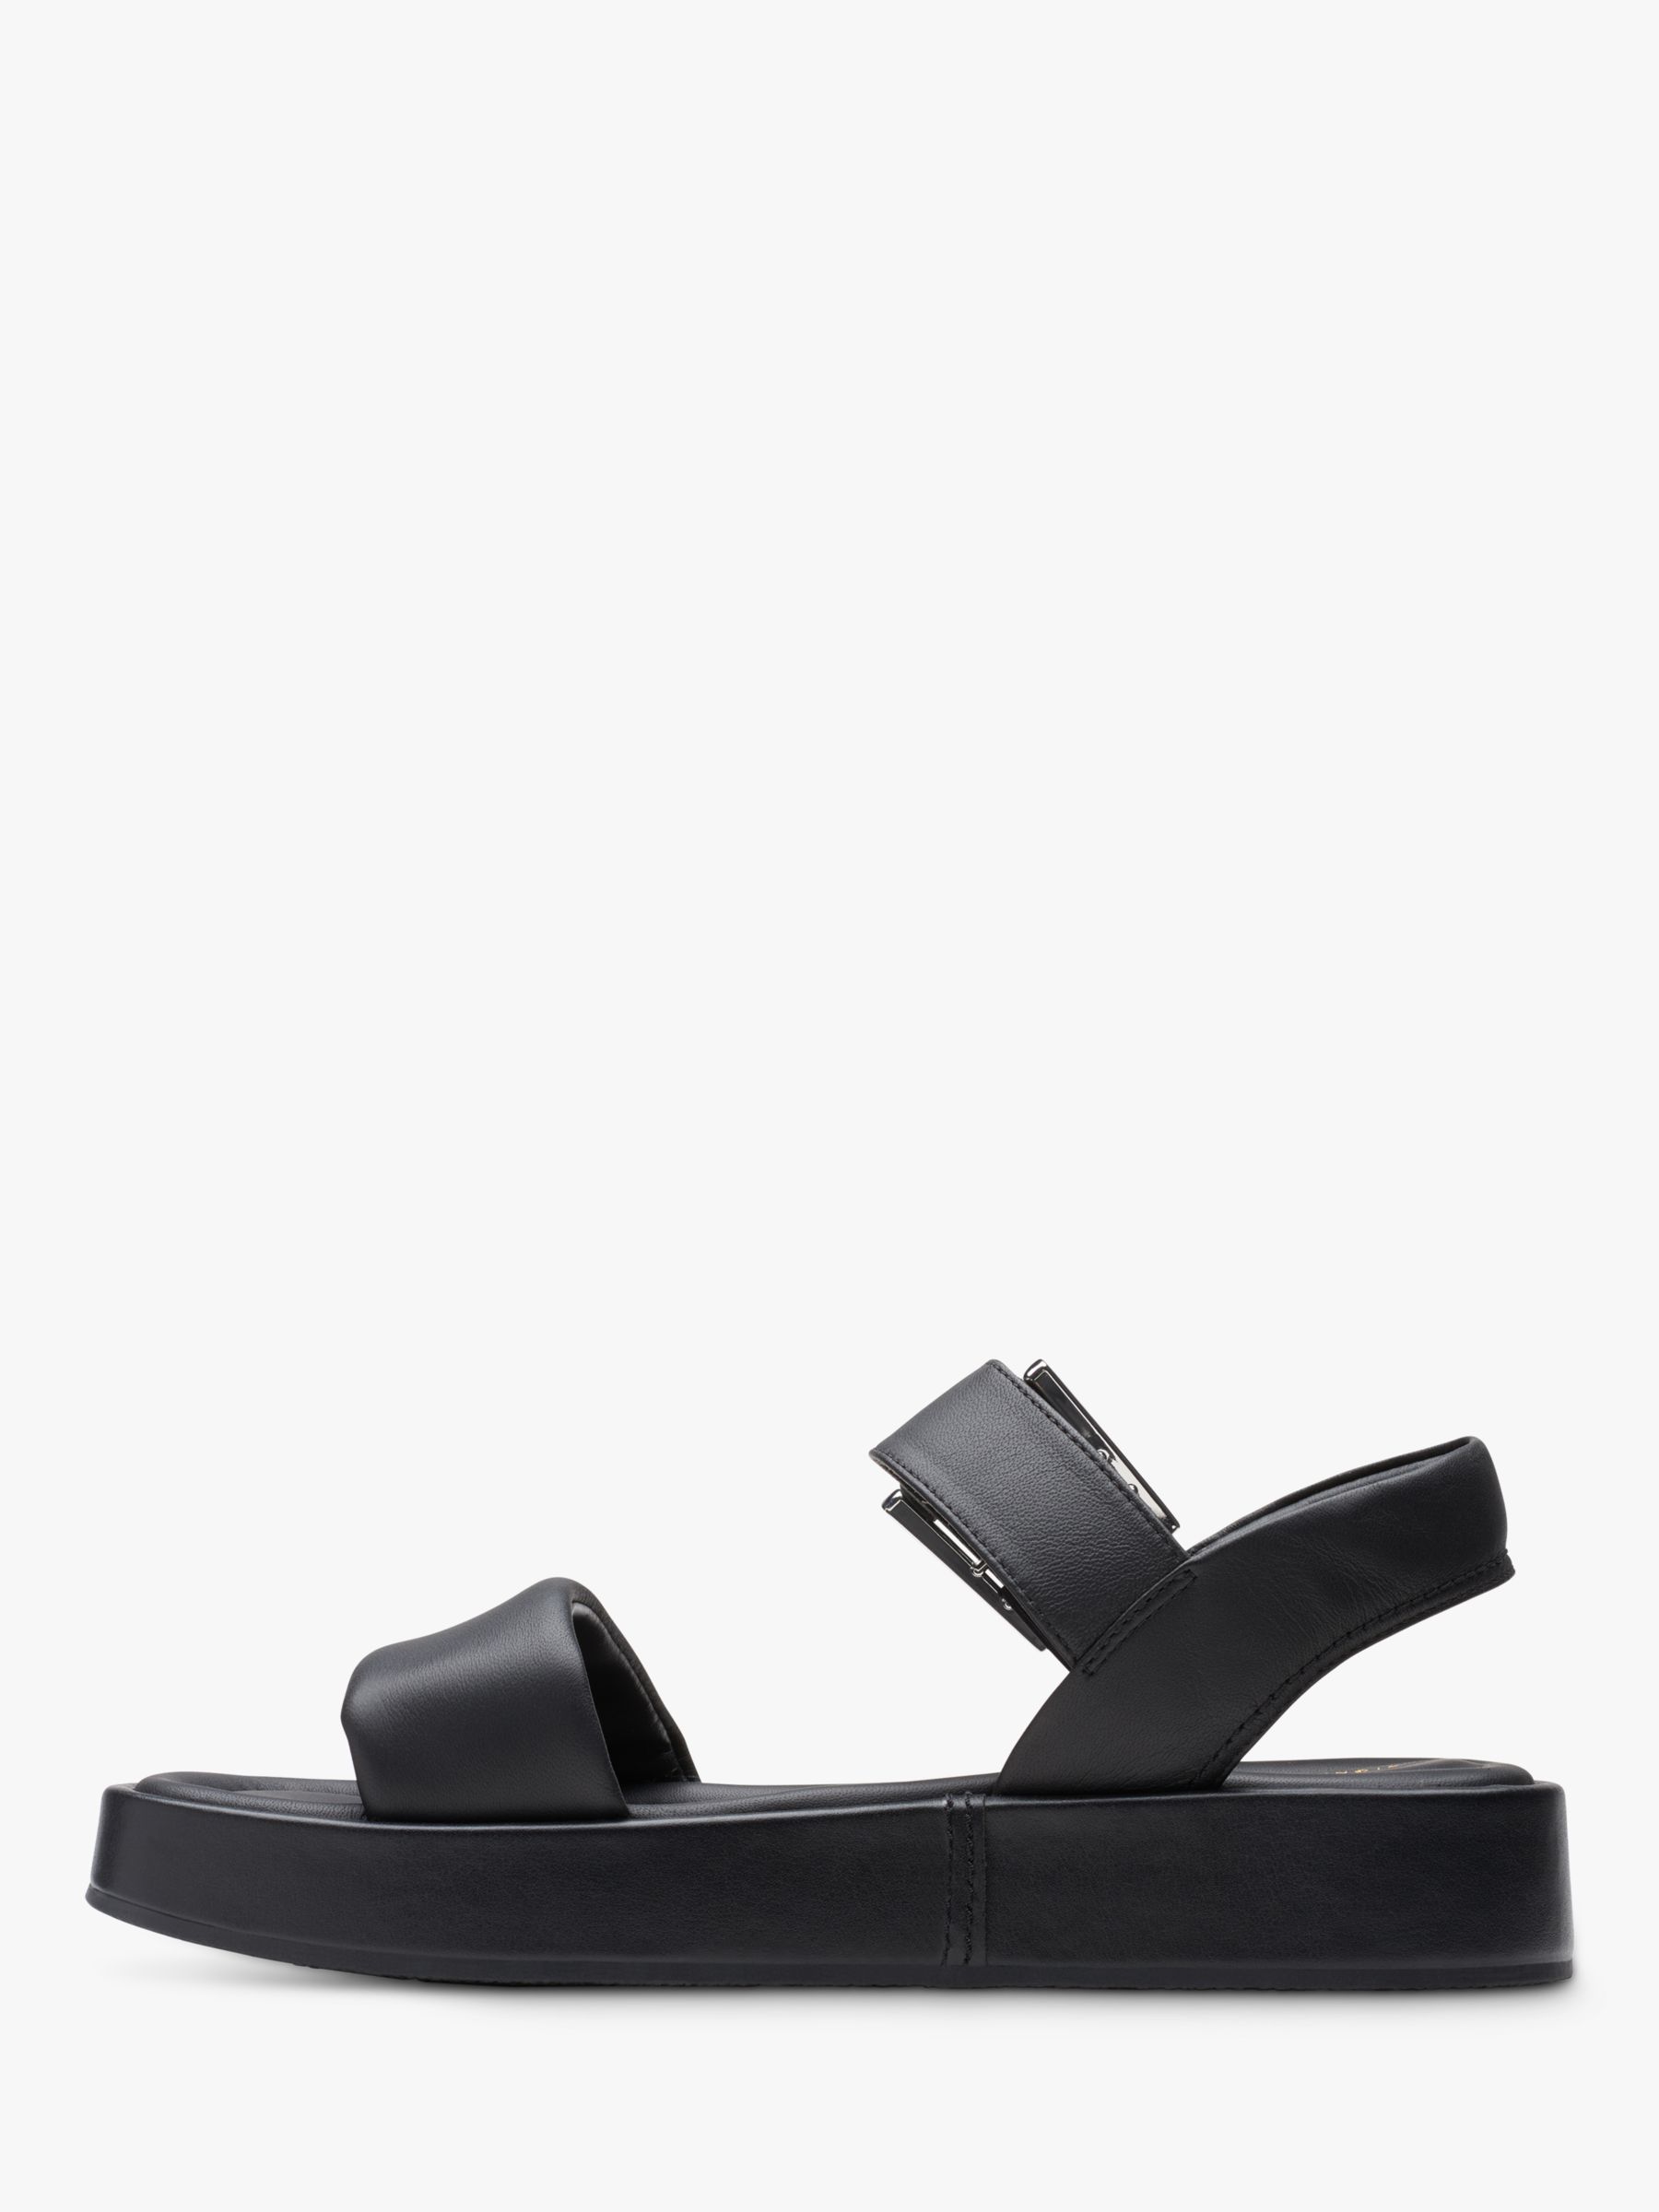 Clarks Alda Leather Strap Sandals, Black at John Lewis & Partners